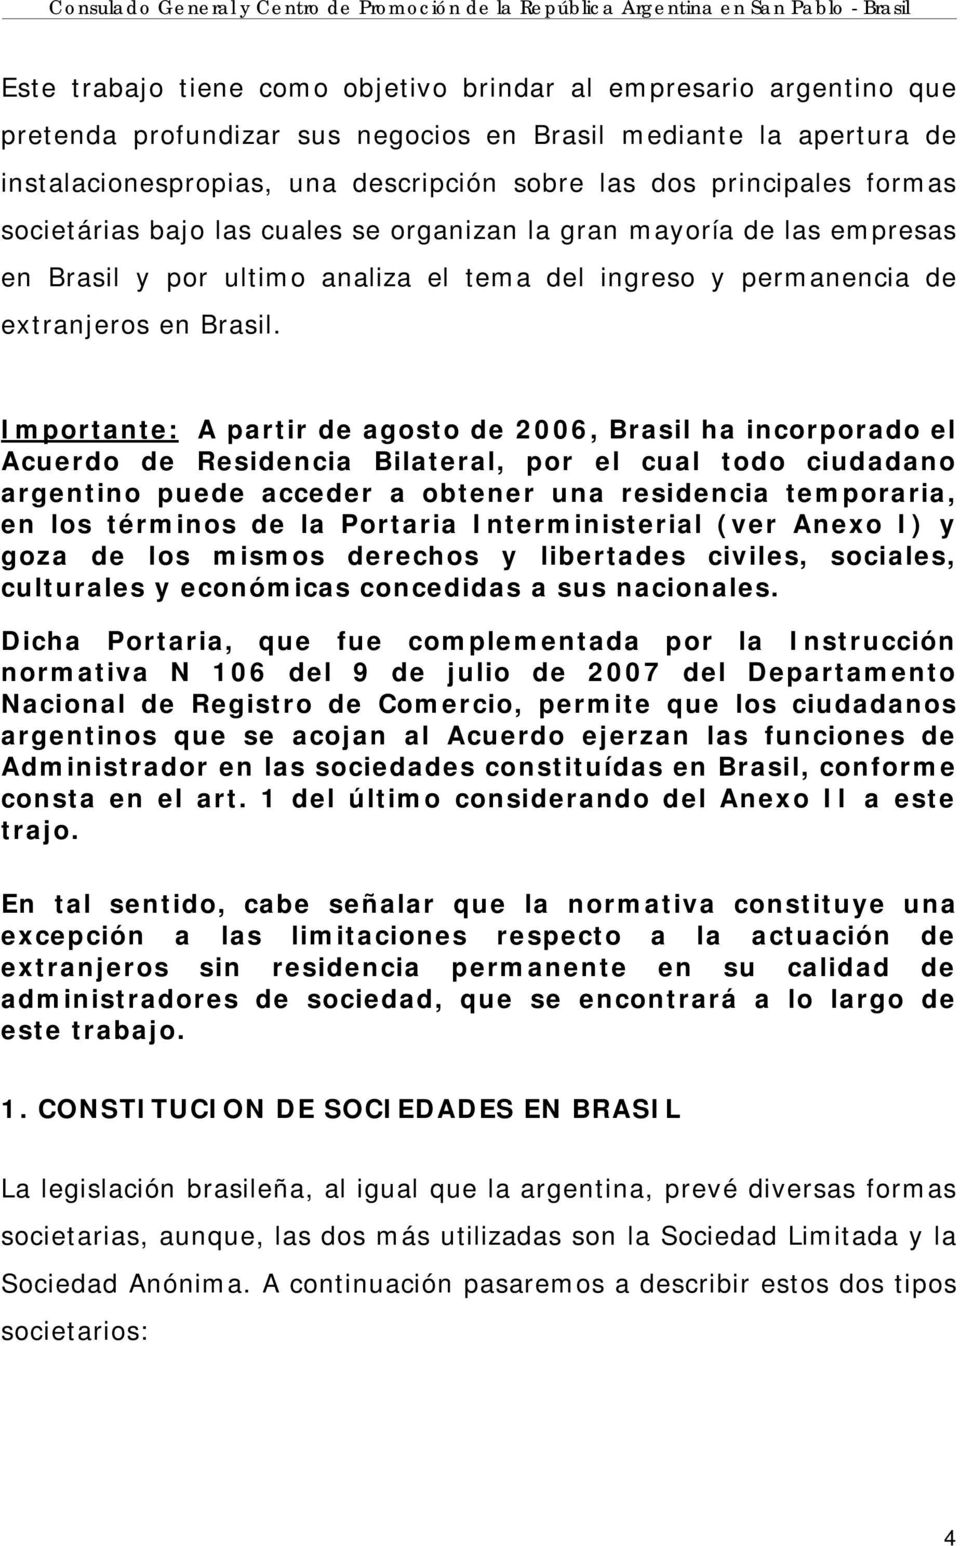 Importante: A partir de agosto de 2006, Brasil ha incorporado el Acuerdo de Residencia Bilateral, por el cual todo ciudadano argentino puede acceder a obtener una residencia temporaria, en los